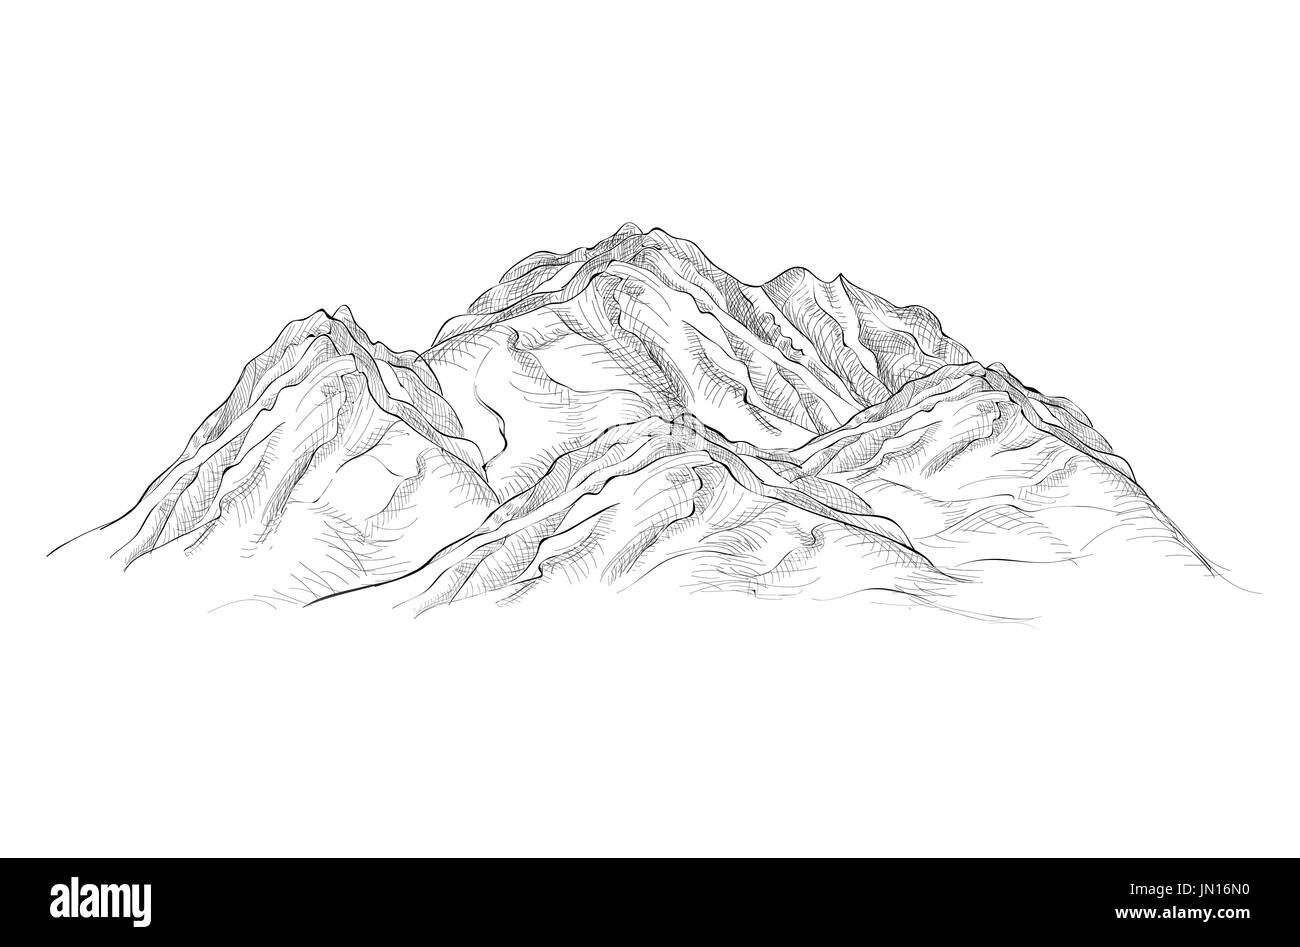 Berge skizzieren isolierte Zeichen. Stich Landschaft Skizze. Stockfoto